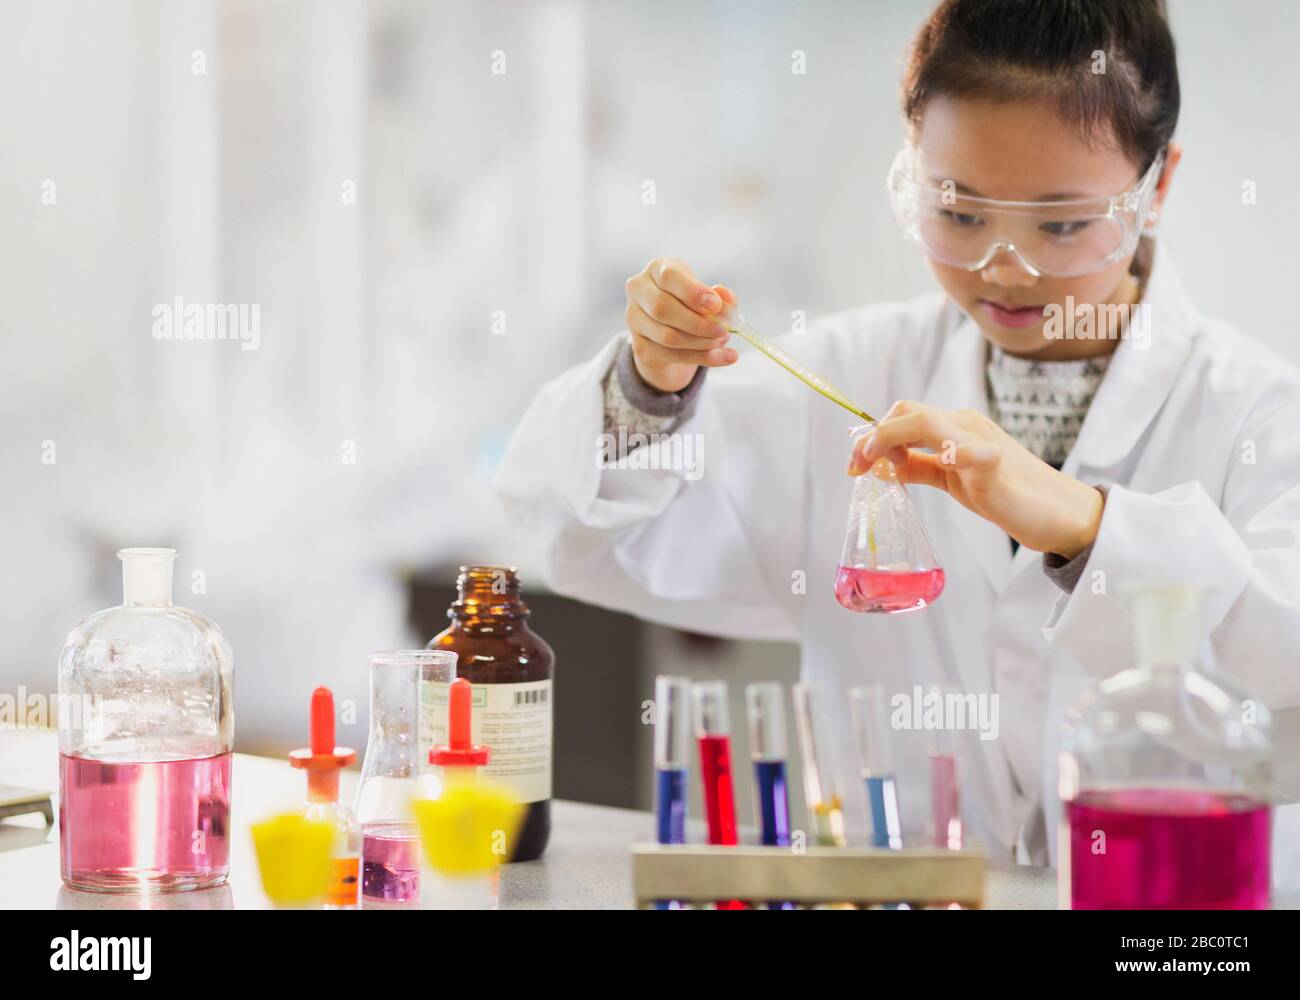 Une jeune étudiante qui effectue une expérience scientifique en salle de classe de laboratoire Banque D'Images